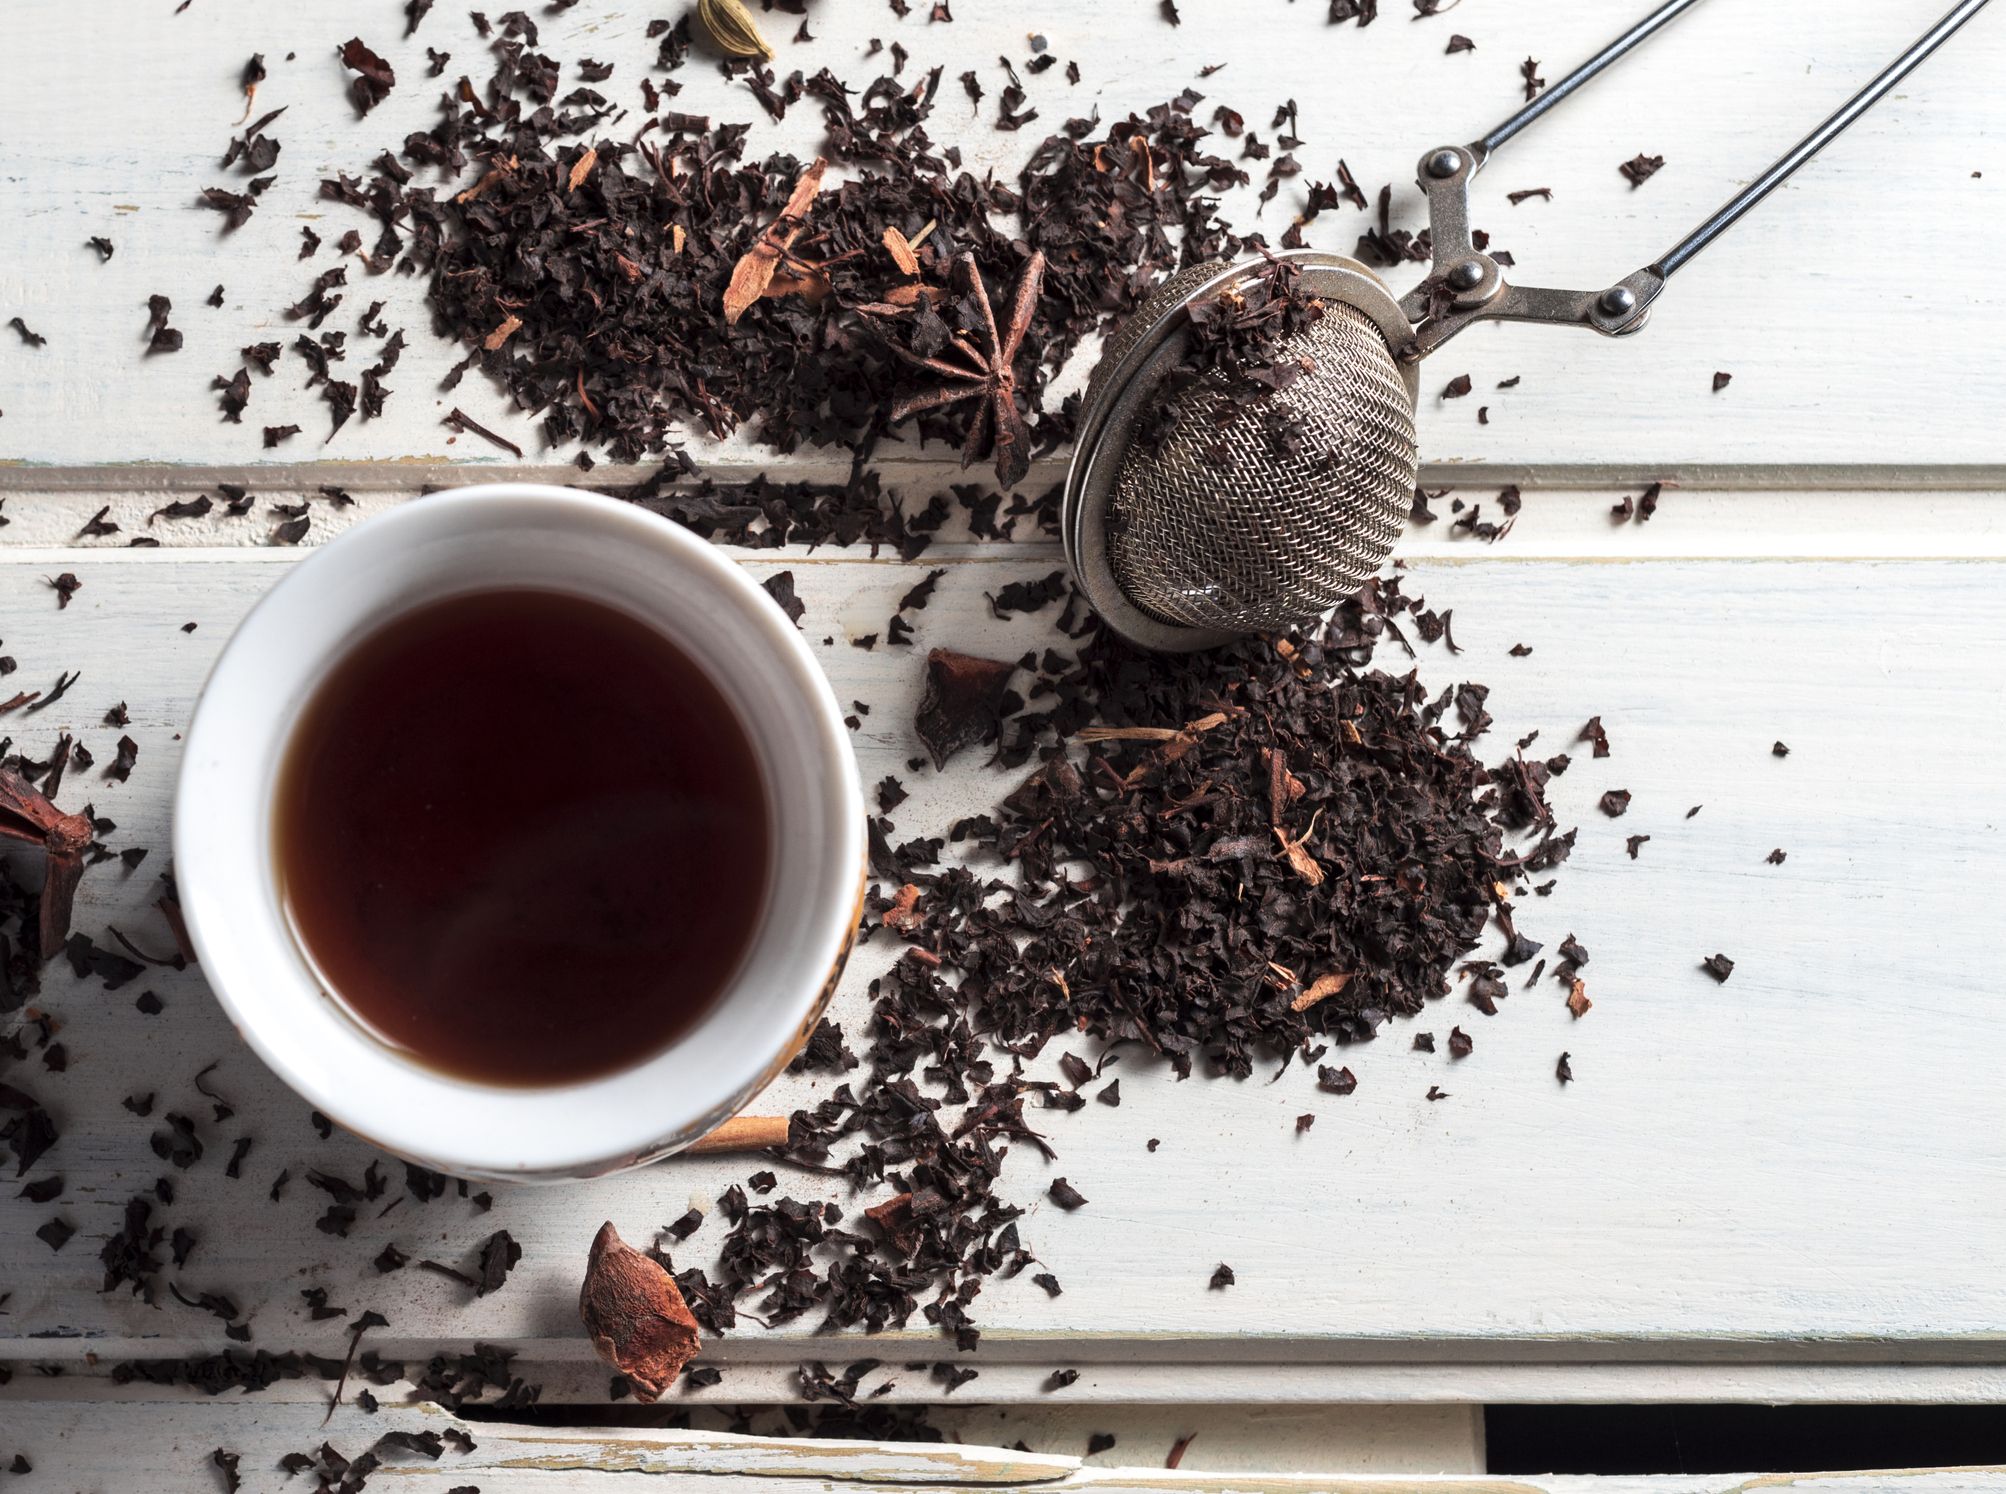 ჩაის მოყვარულთათვის: რა დაემართება თქვენს სხეულს, თუ ყოველდღიურად მიიღებთ შავი ჩაის